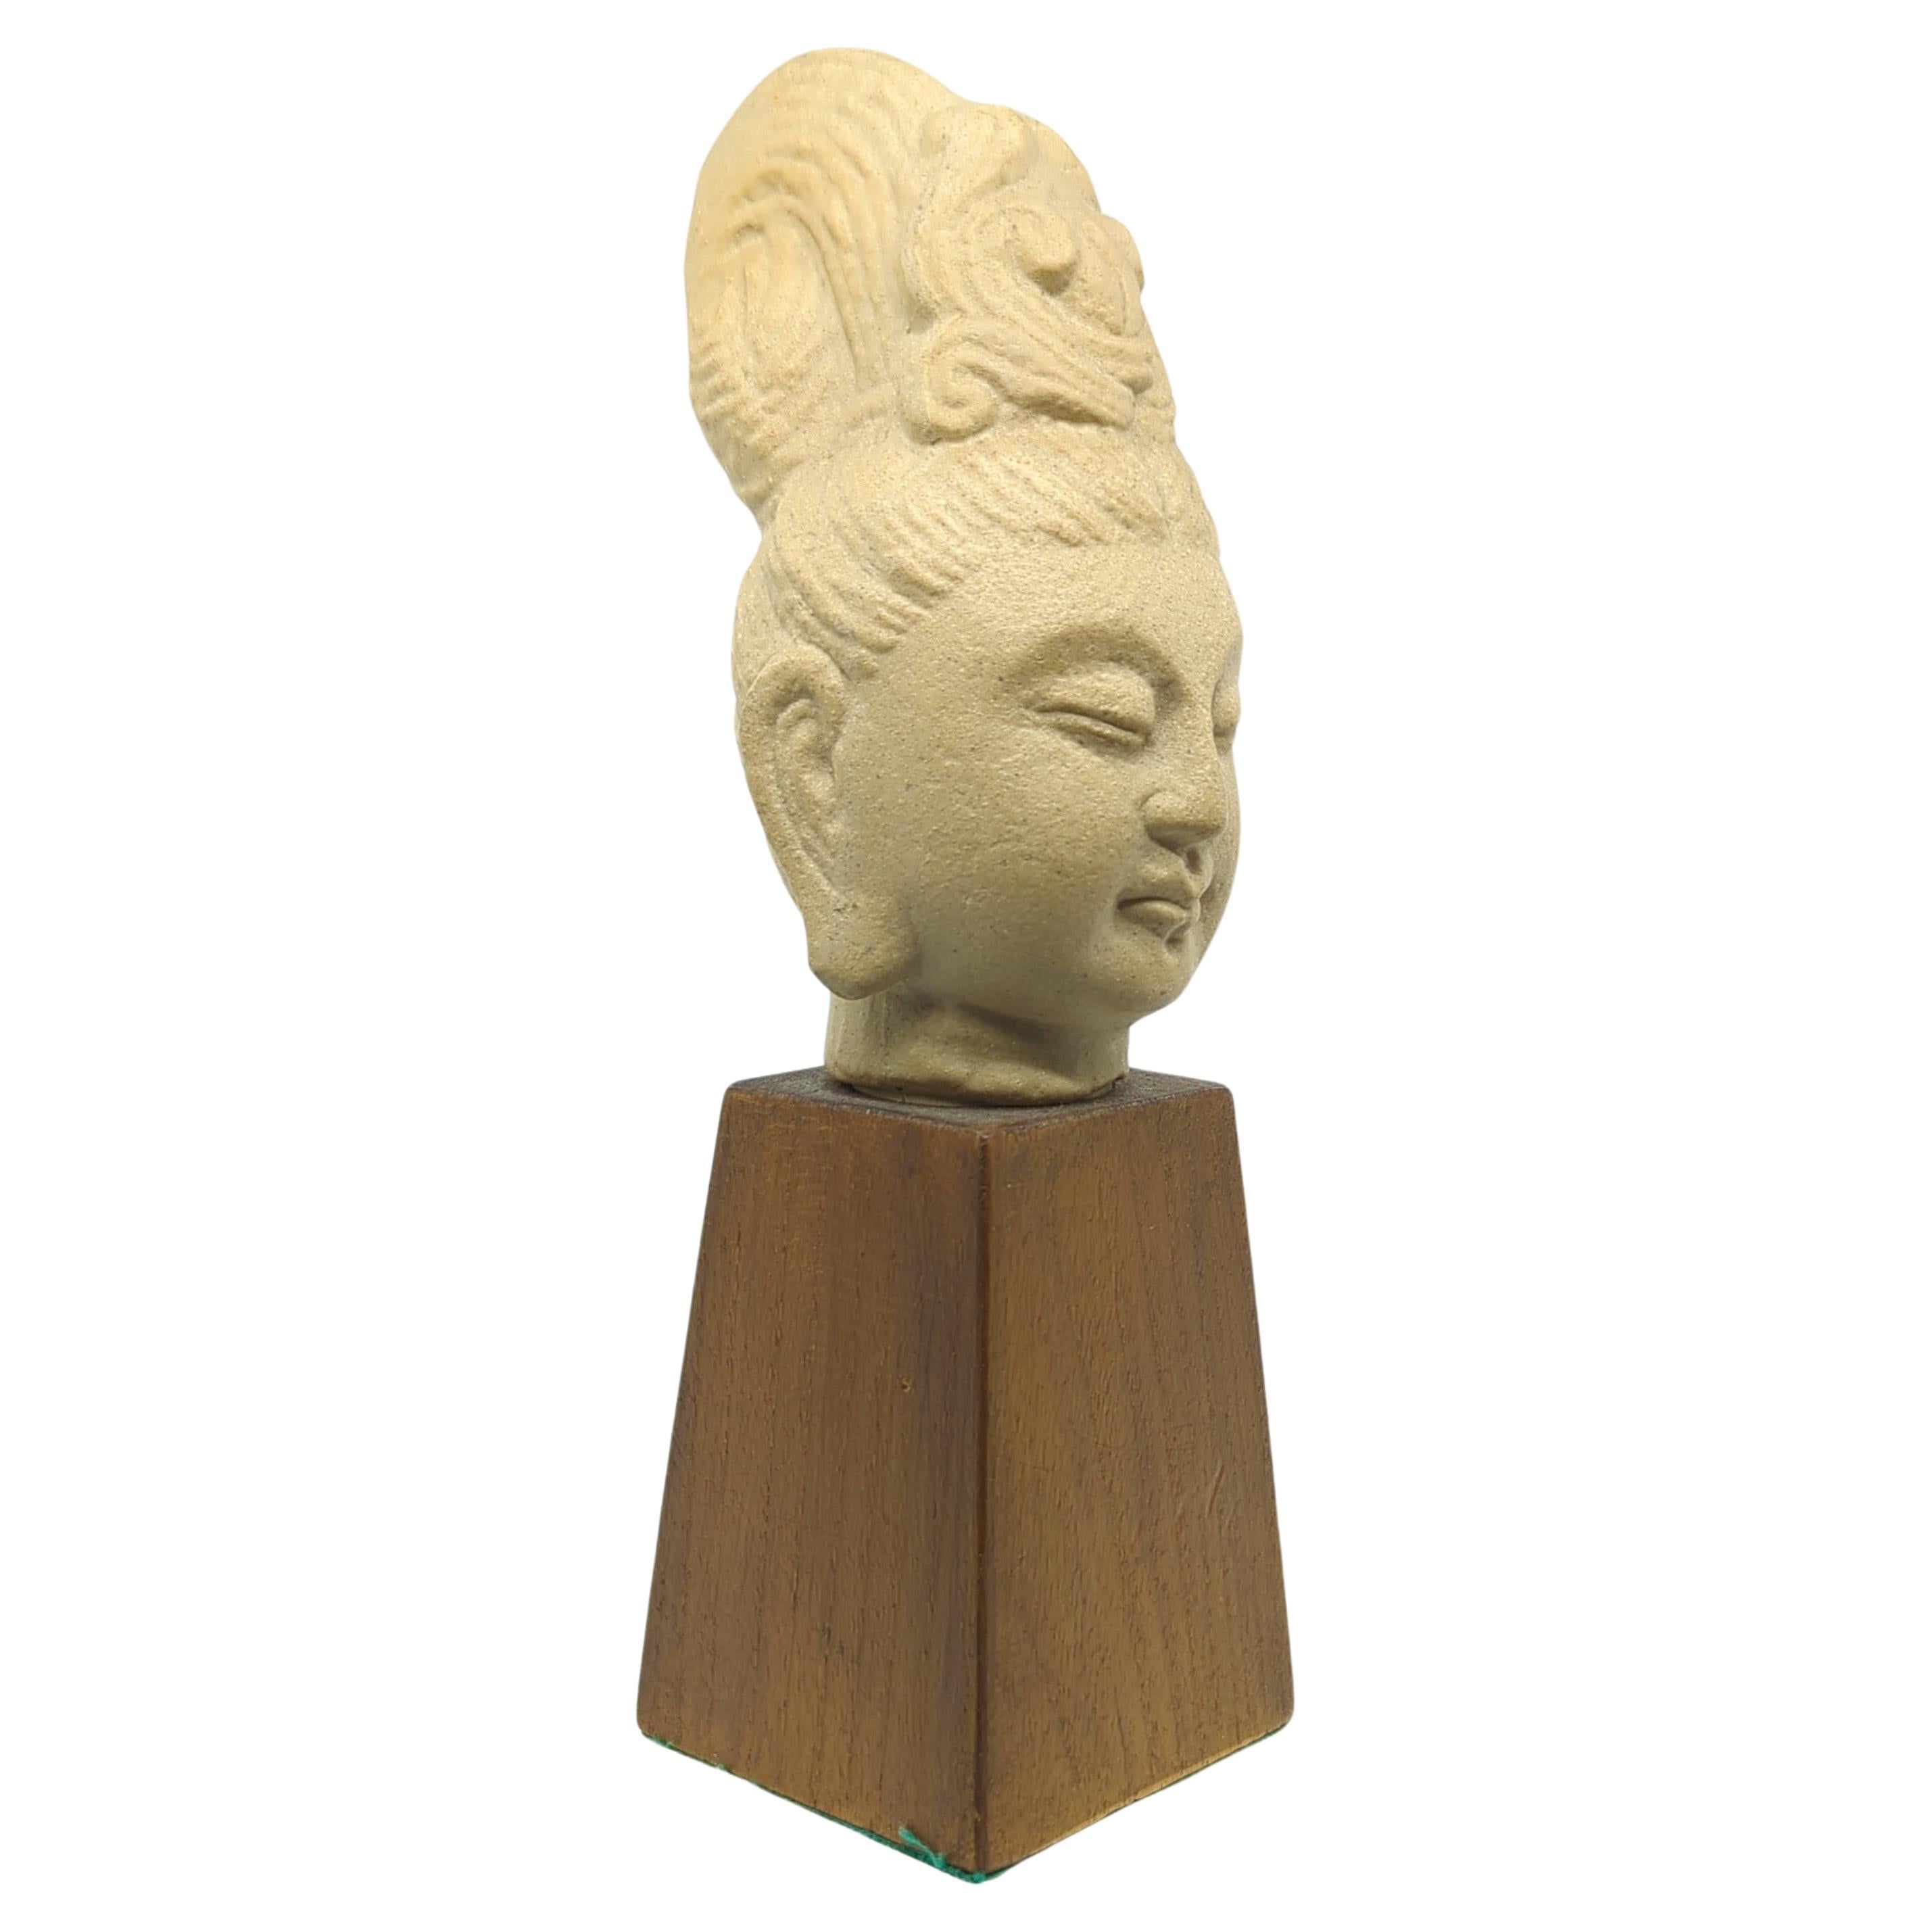 Vintage Chinesisch Keramik Büste von Guanyin Kwan Yin Buddha auf Holz Stand Mitte 20c